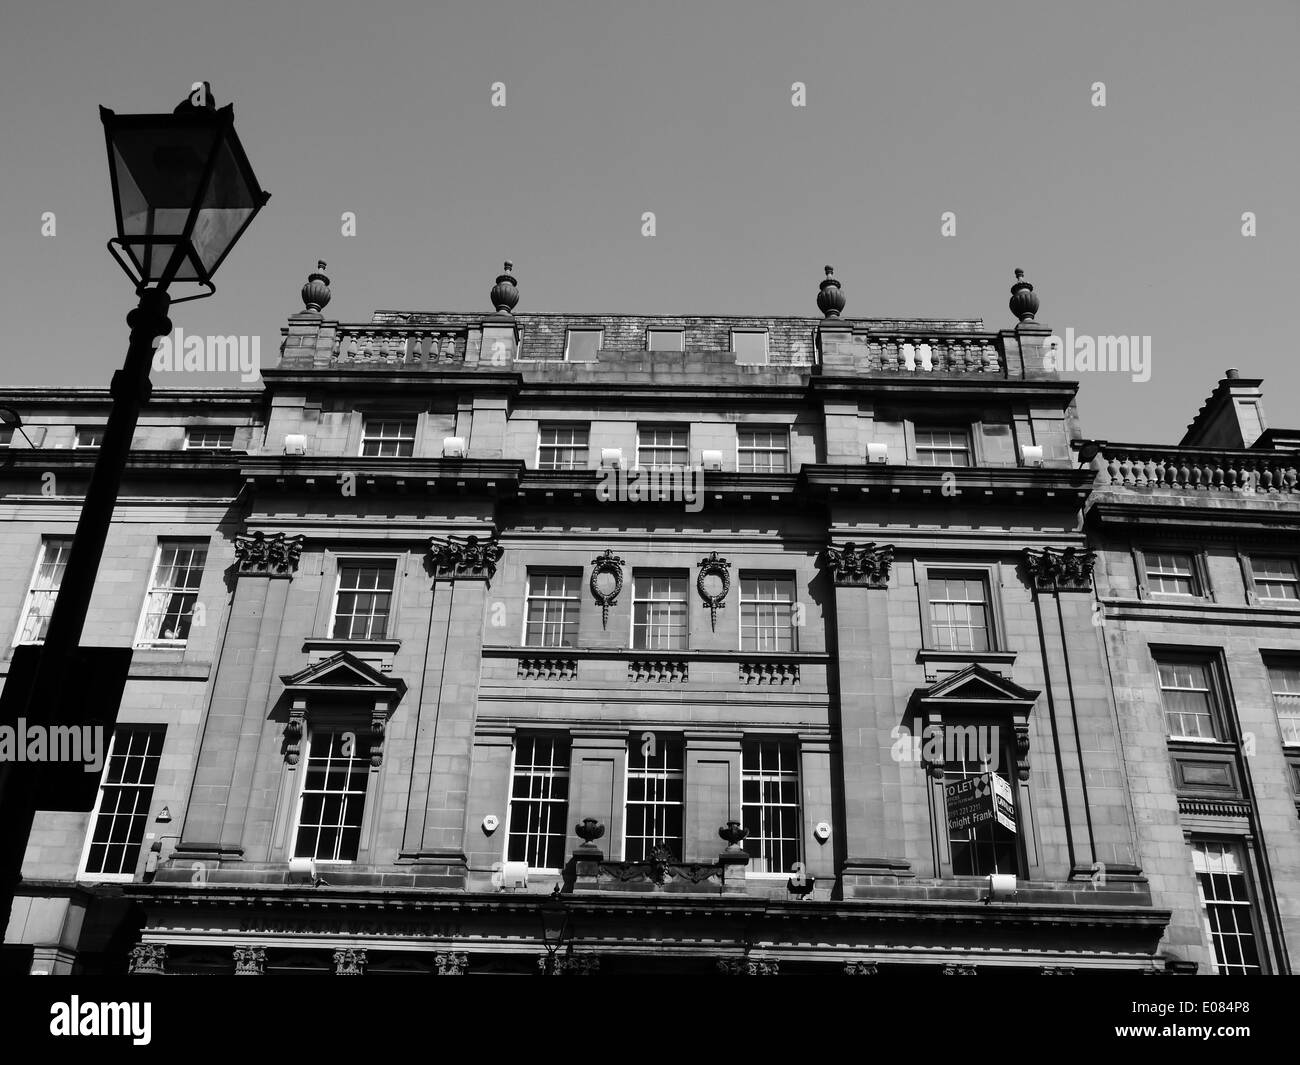 Détails de l'architecture néo-classique des bâtiments, Grey Street, Newcastle upon Tyne, Royaume-Uni Banque D'Images